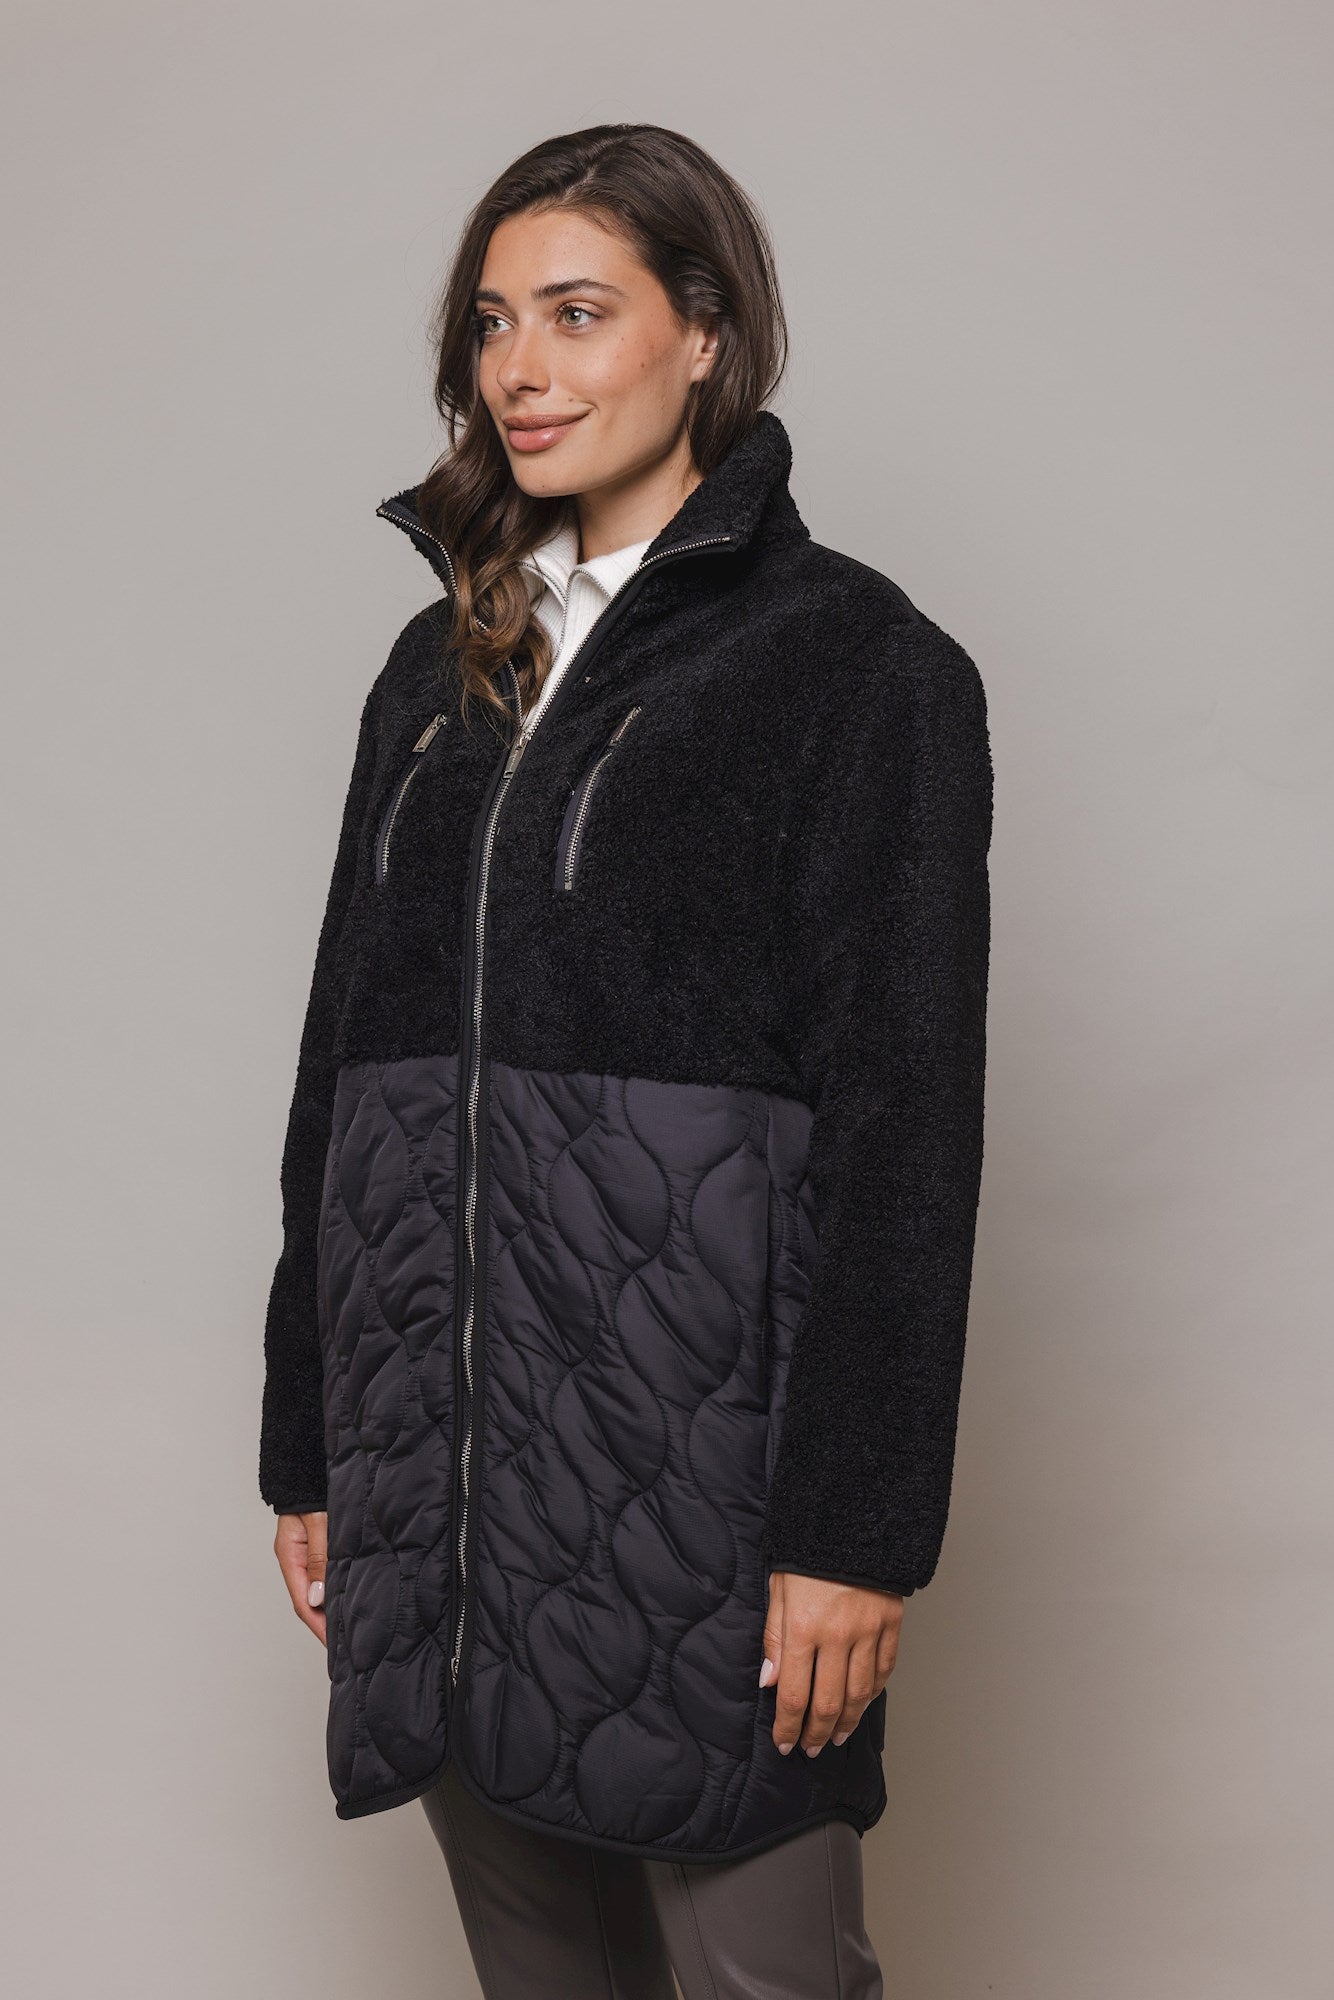 Jur coat – Rino & Pelle Online B.V.